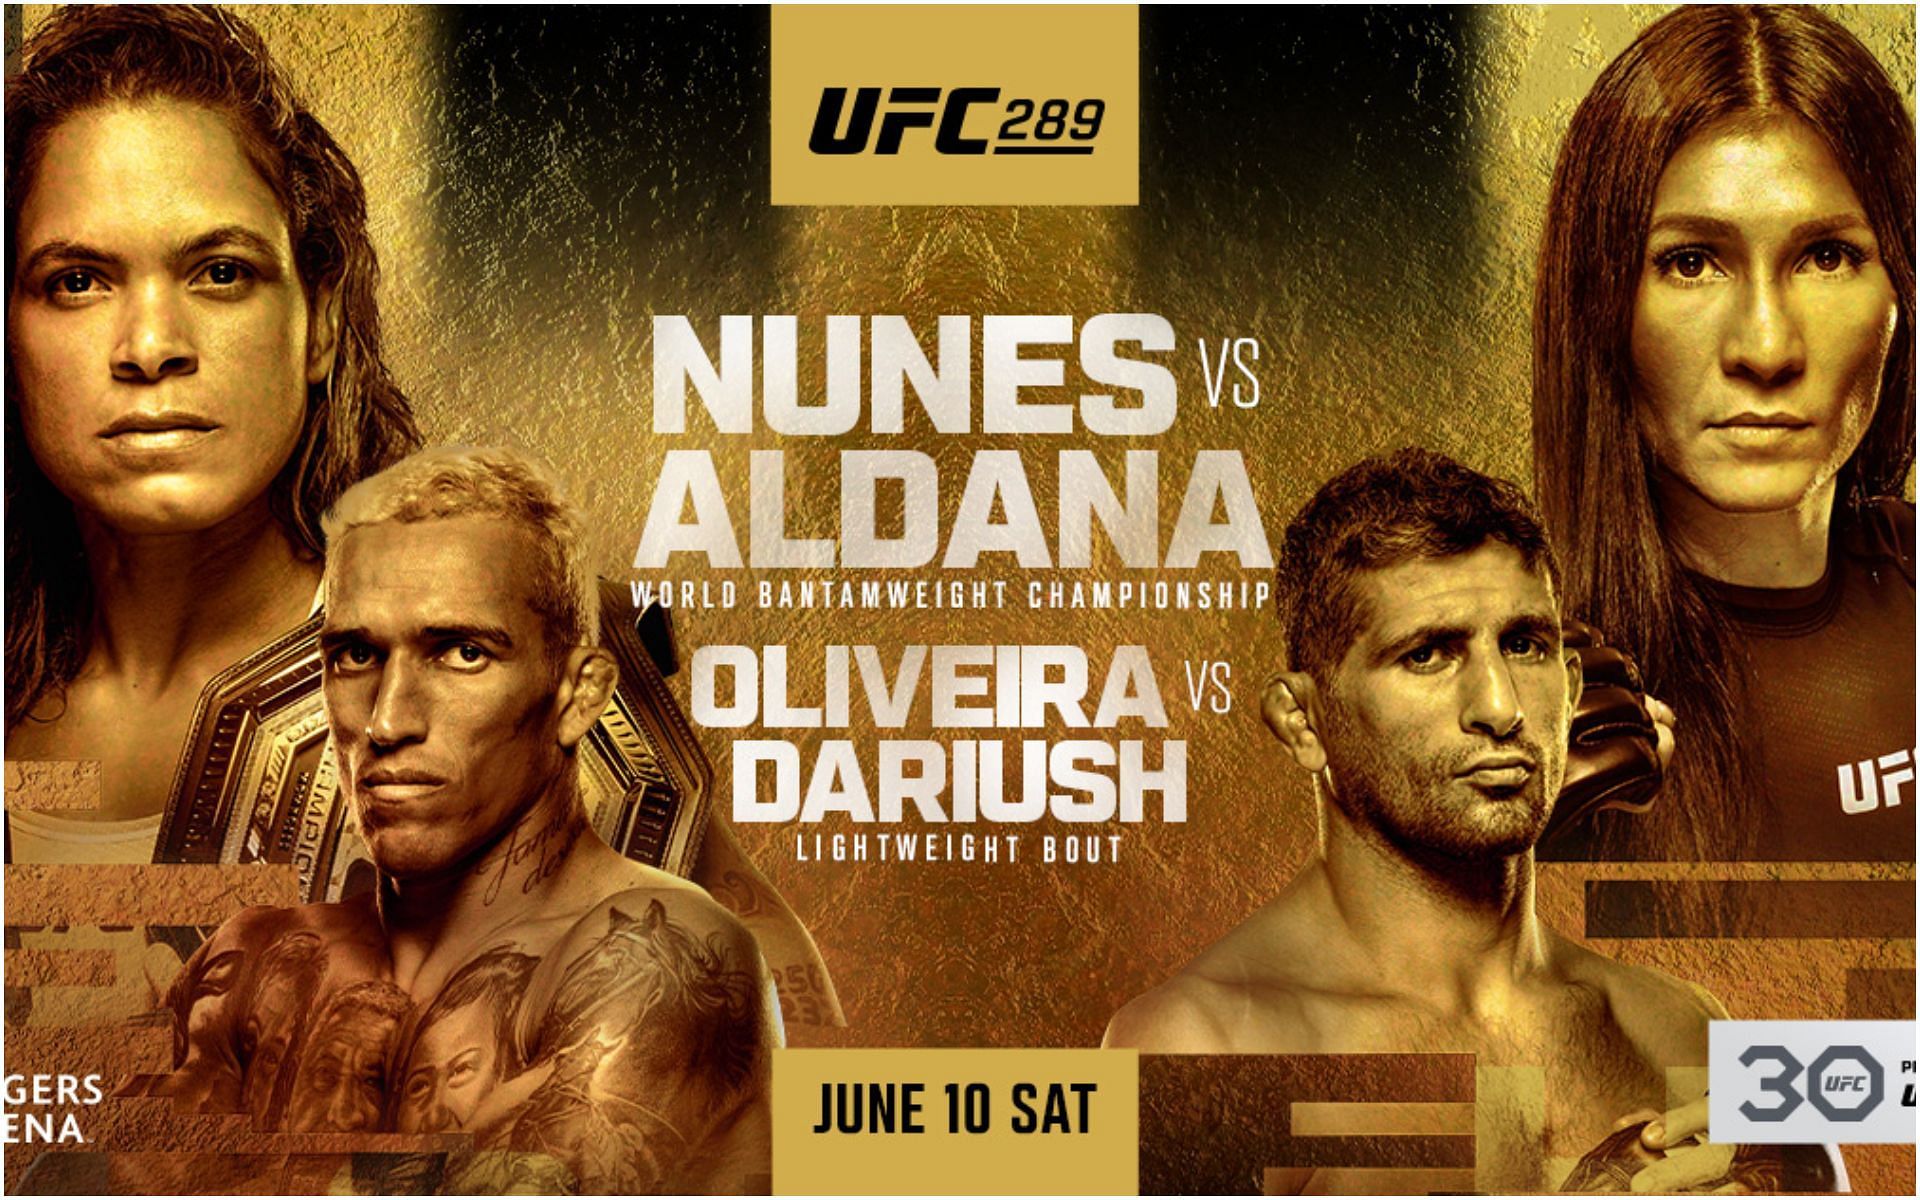 UFC 289: Nunes vs Aldana official poster